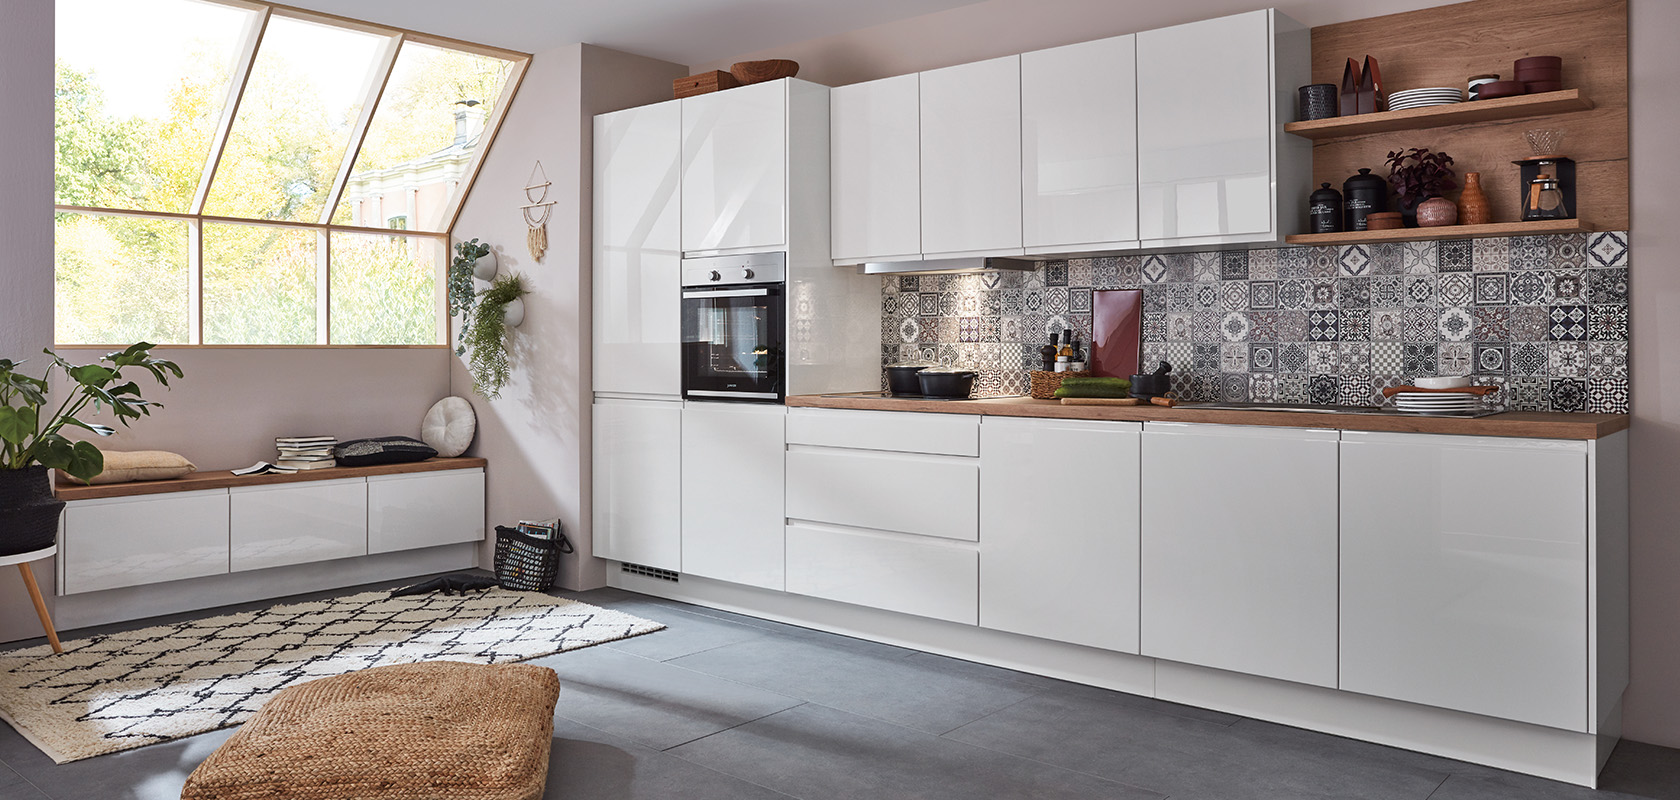 Moderní kuchyňský interiér s čistými bílými skříněmi, geometrickými obklady na zdi a dřevěnými detaily, které vytvářejí útulný a stylový prostor pro vaření a pobyt.